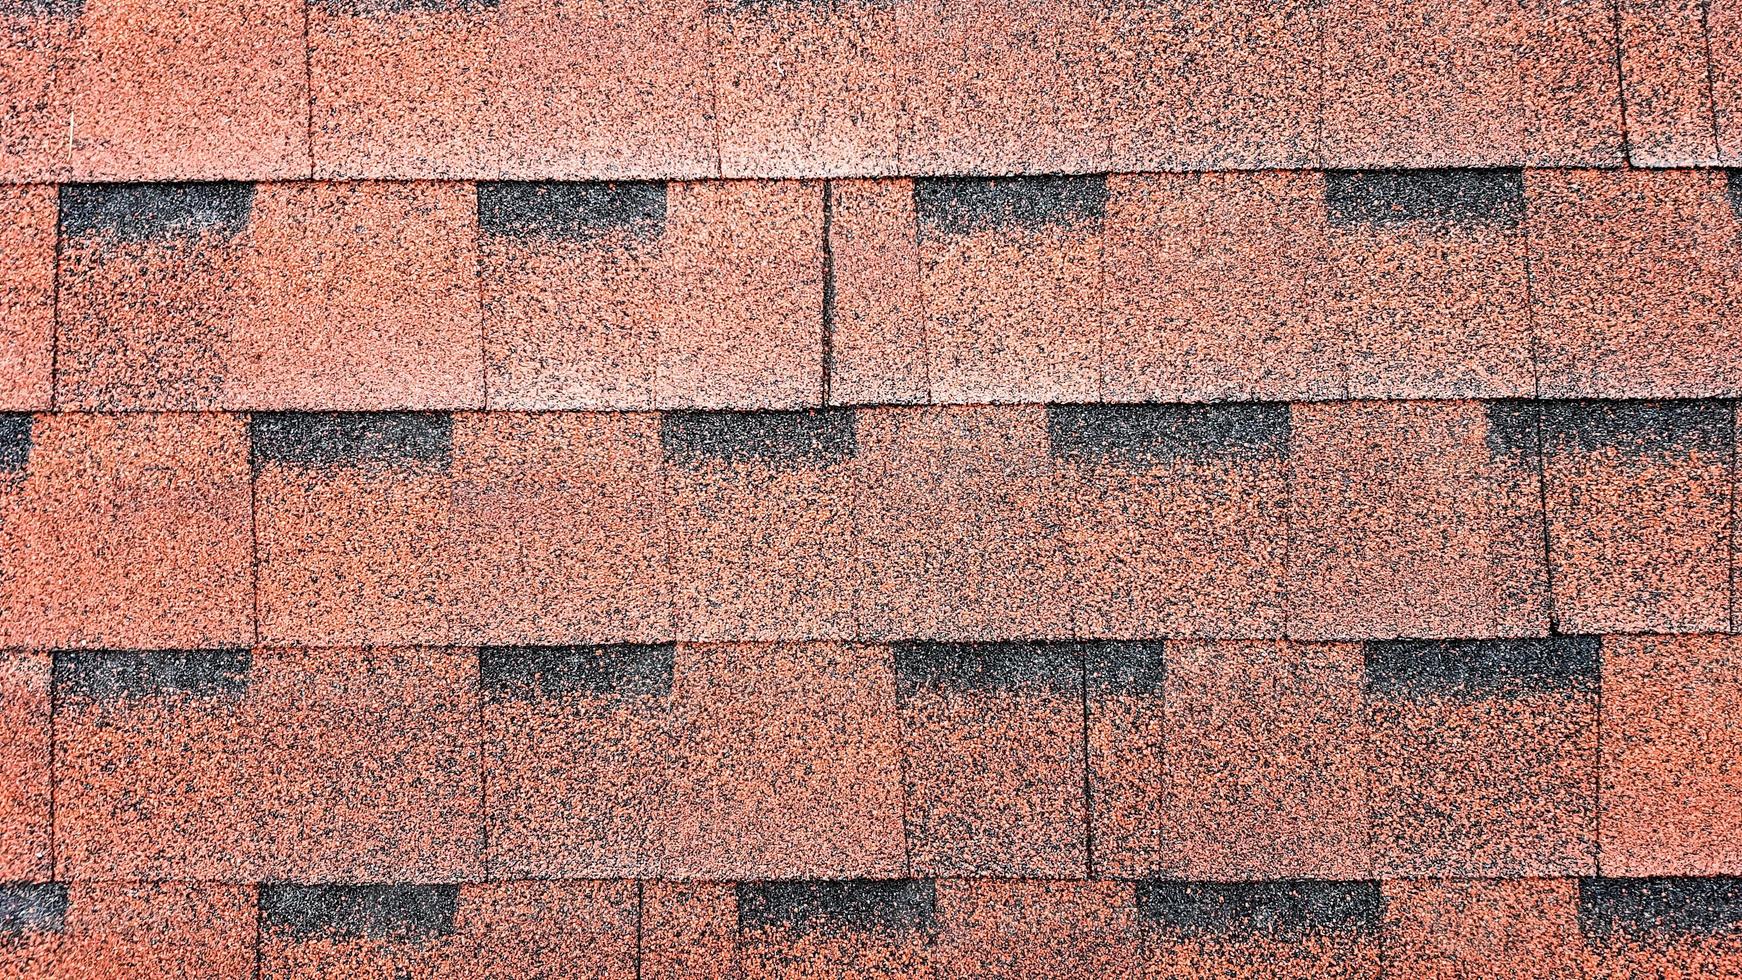 Nahaufnahme auf Asphaltdach rote Schindeln Hintergrund. Dachschindeln aus Bitumen - Dachkonstruktion, Dachreparatur. rote Schindeln auf dem Dach des Hauses. Hintergrund der roten Schindeln foto